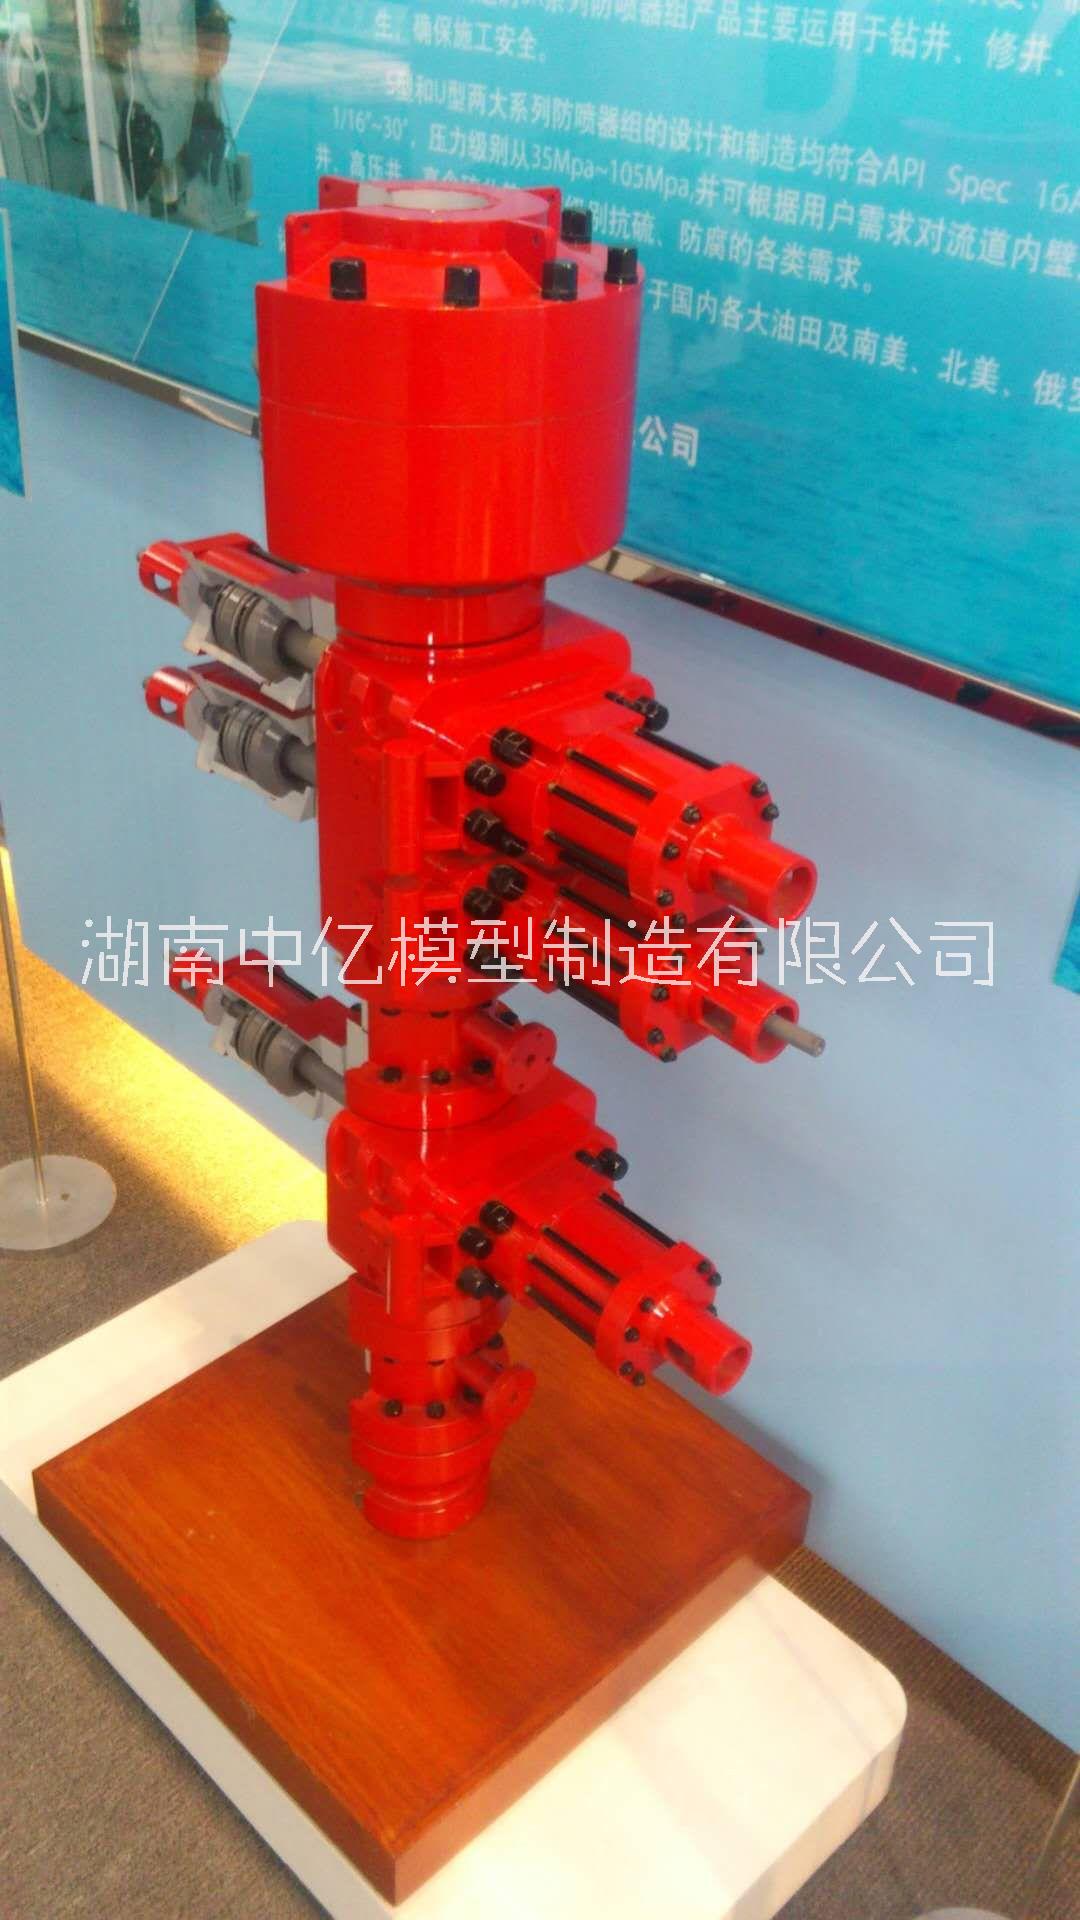 上海定制-防喷器模型、井口装置模型